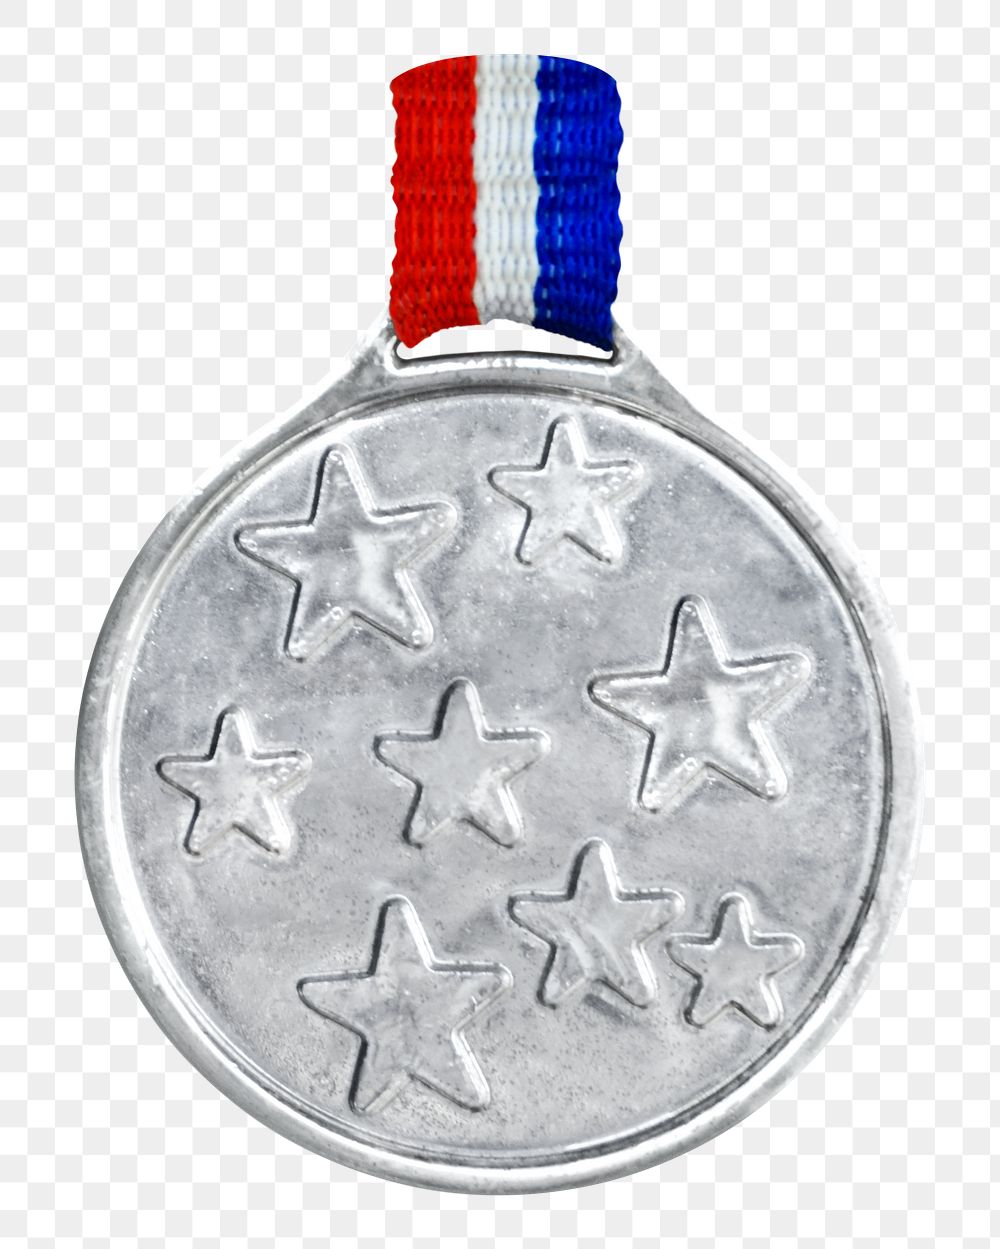 Silver medal png sticker, transparent background